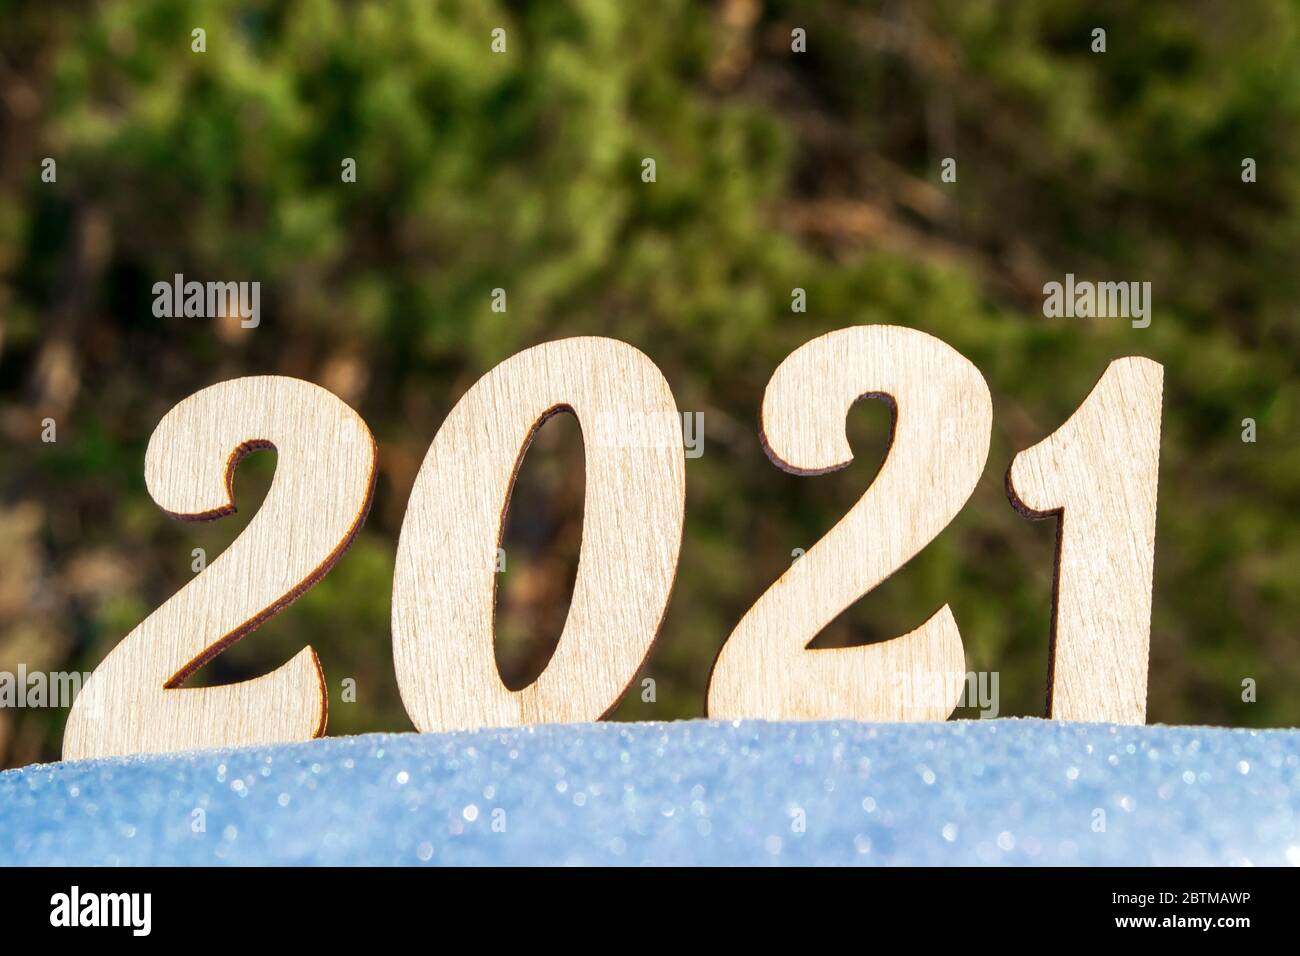 Célébration de la nouvelle année 2021. Les numéros de bois 2021 sur une surface enneigée de la forêt de vignerons. Illuminé par le soleil éclatant sur fond d'épicéa. Banque D'Images